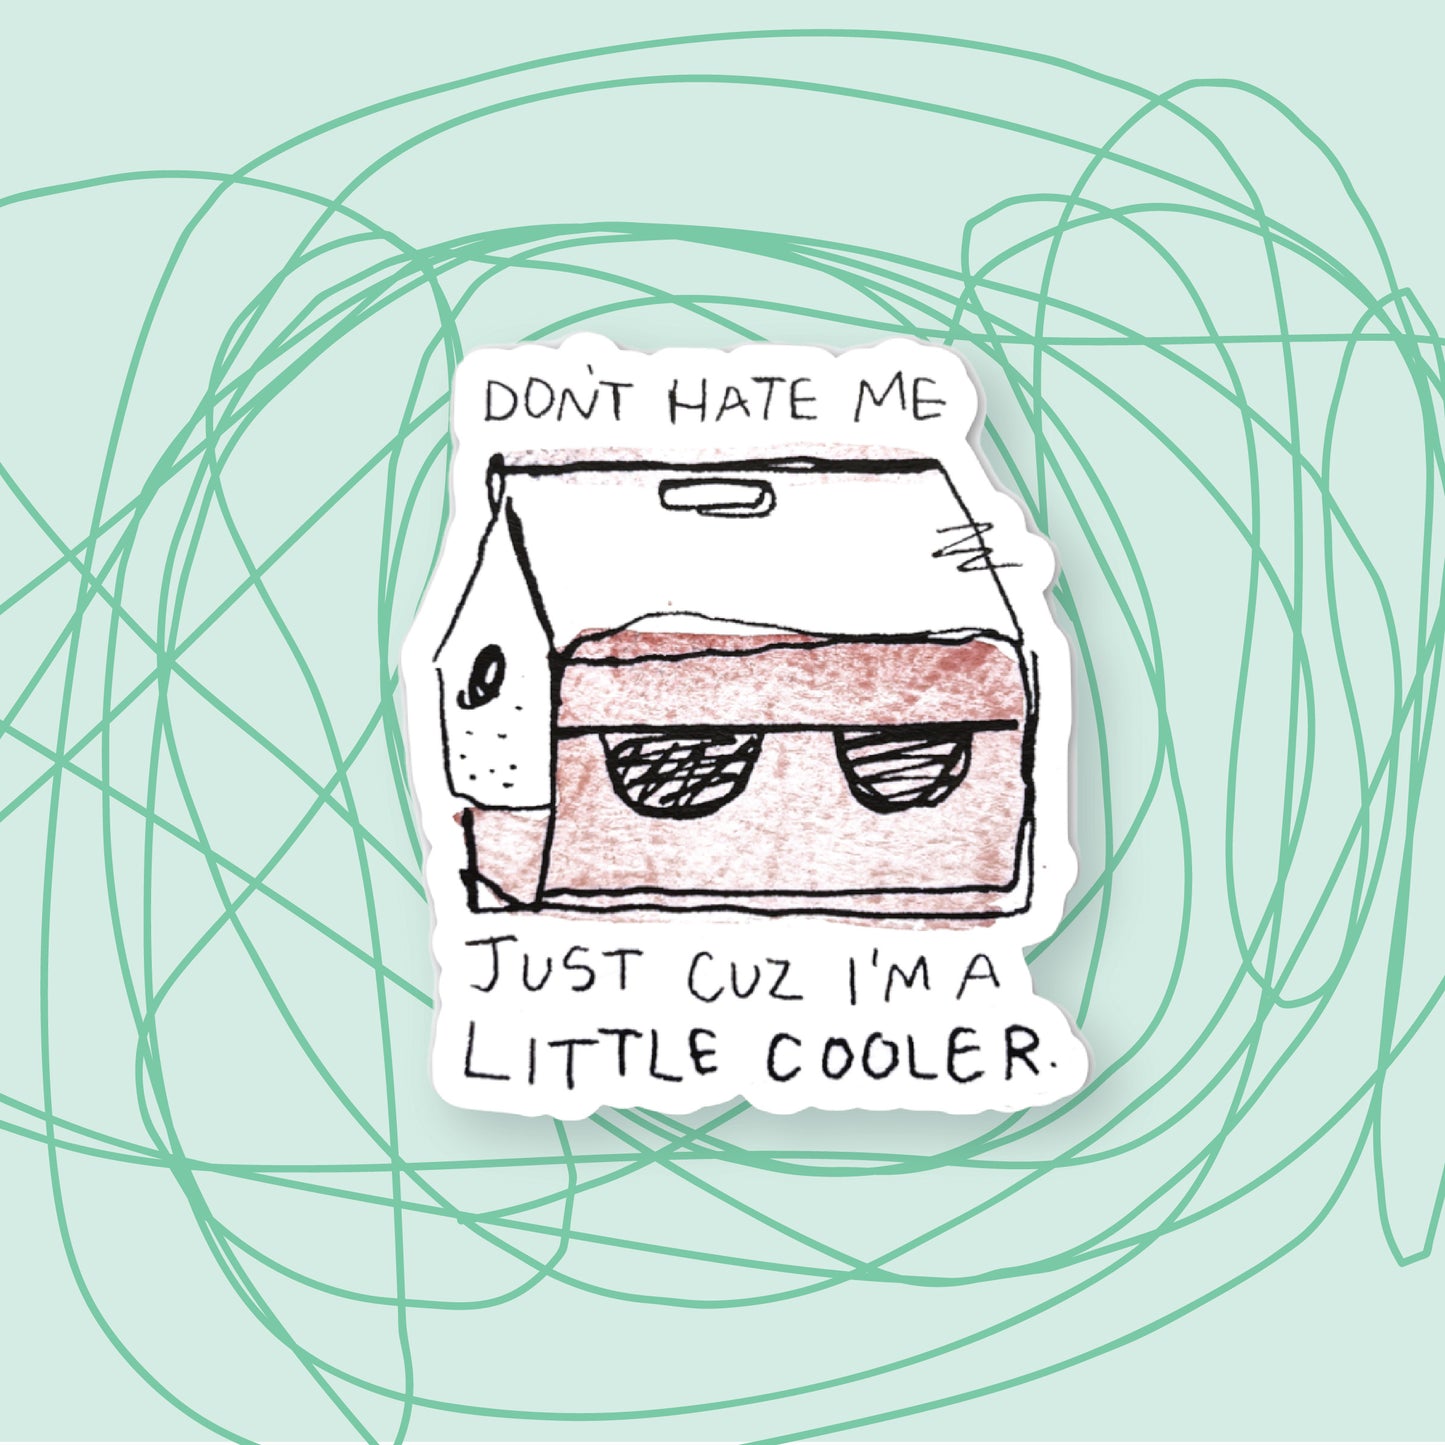 "I'm a Little Cooler" Sticker